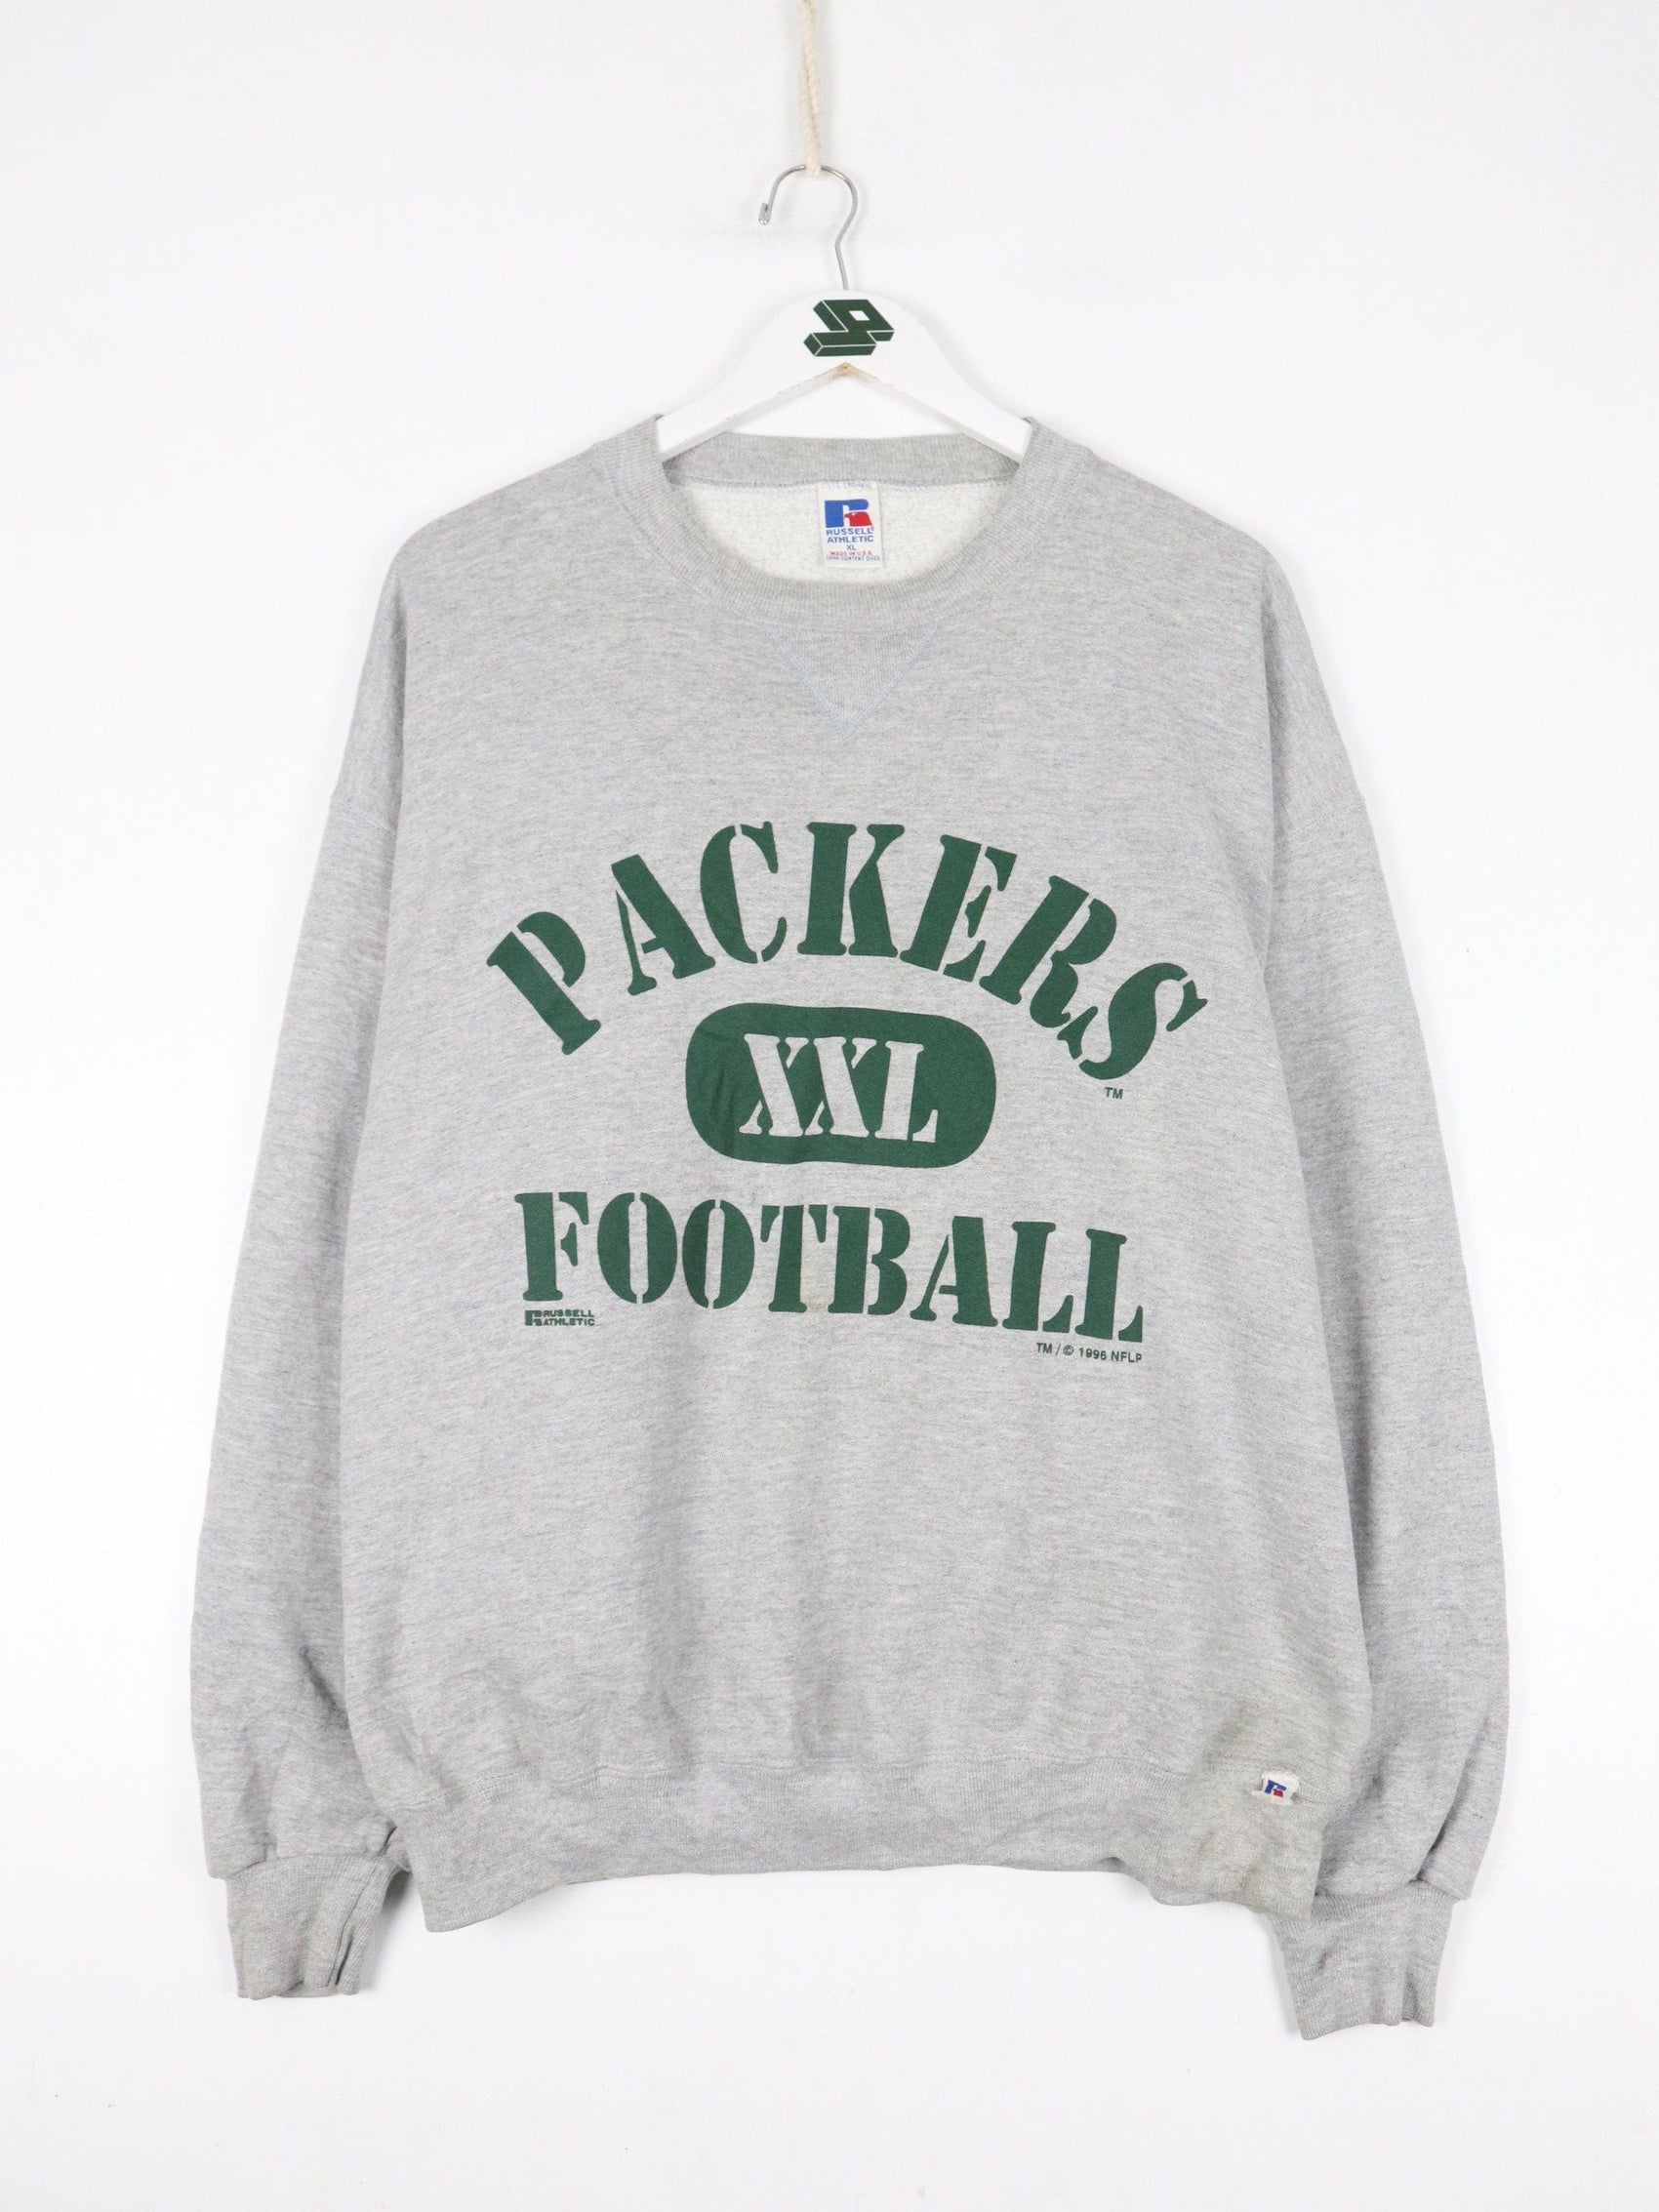 Russell Athletic Sweatshirts & Hoodies Vintage Green Bay Packers Sweatshirt Fits Mens Large Grey Russell Athletic